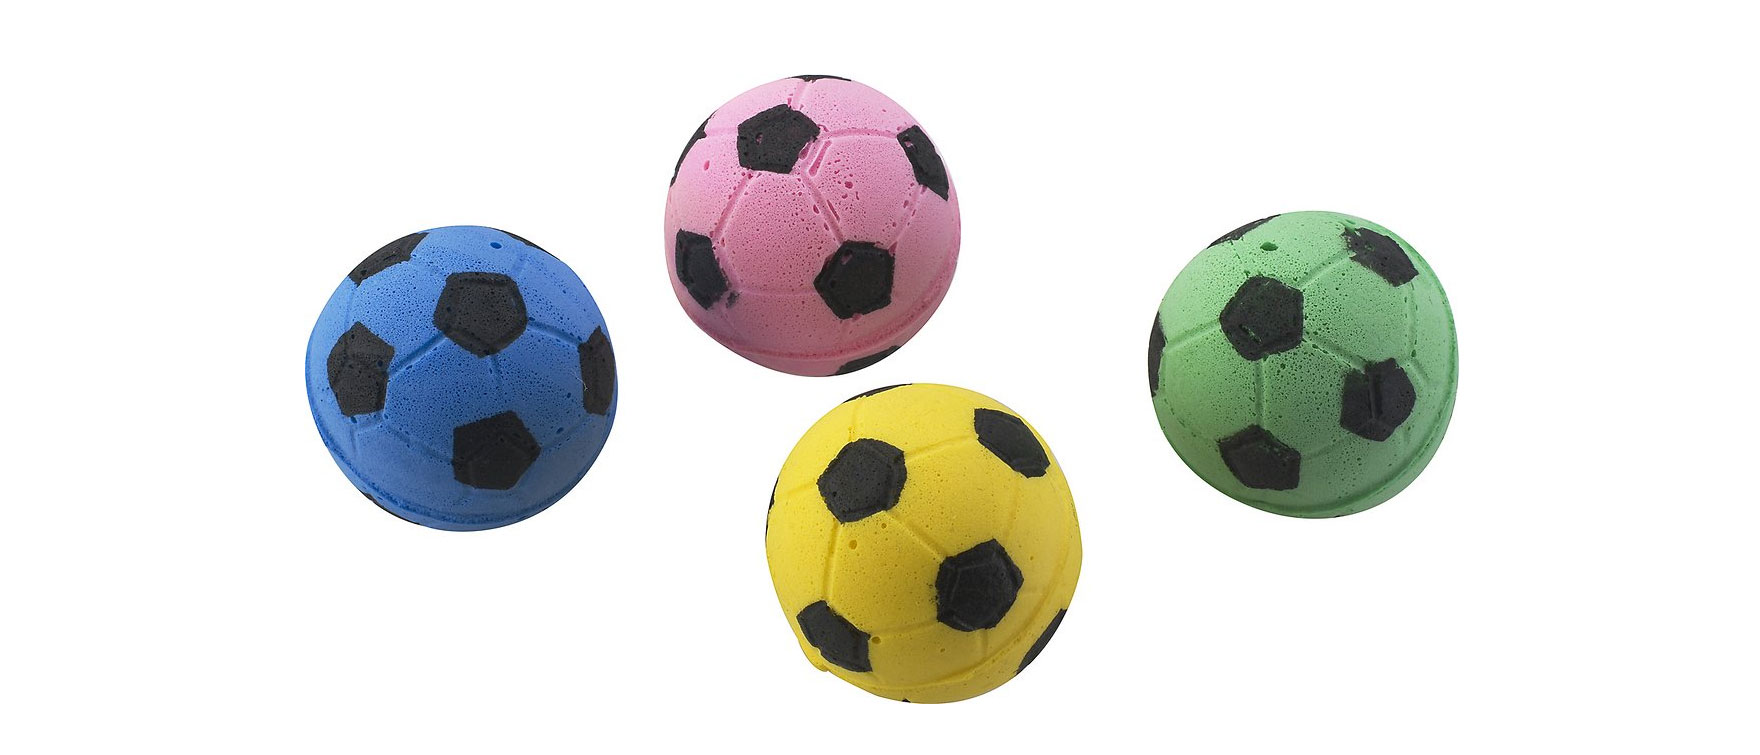 3. Sponge Soccer Balls Cat Toy